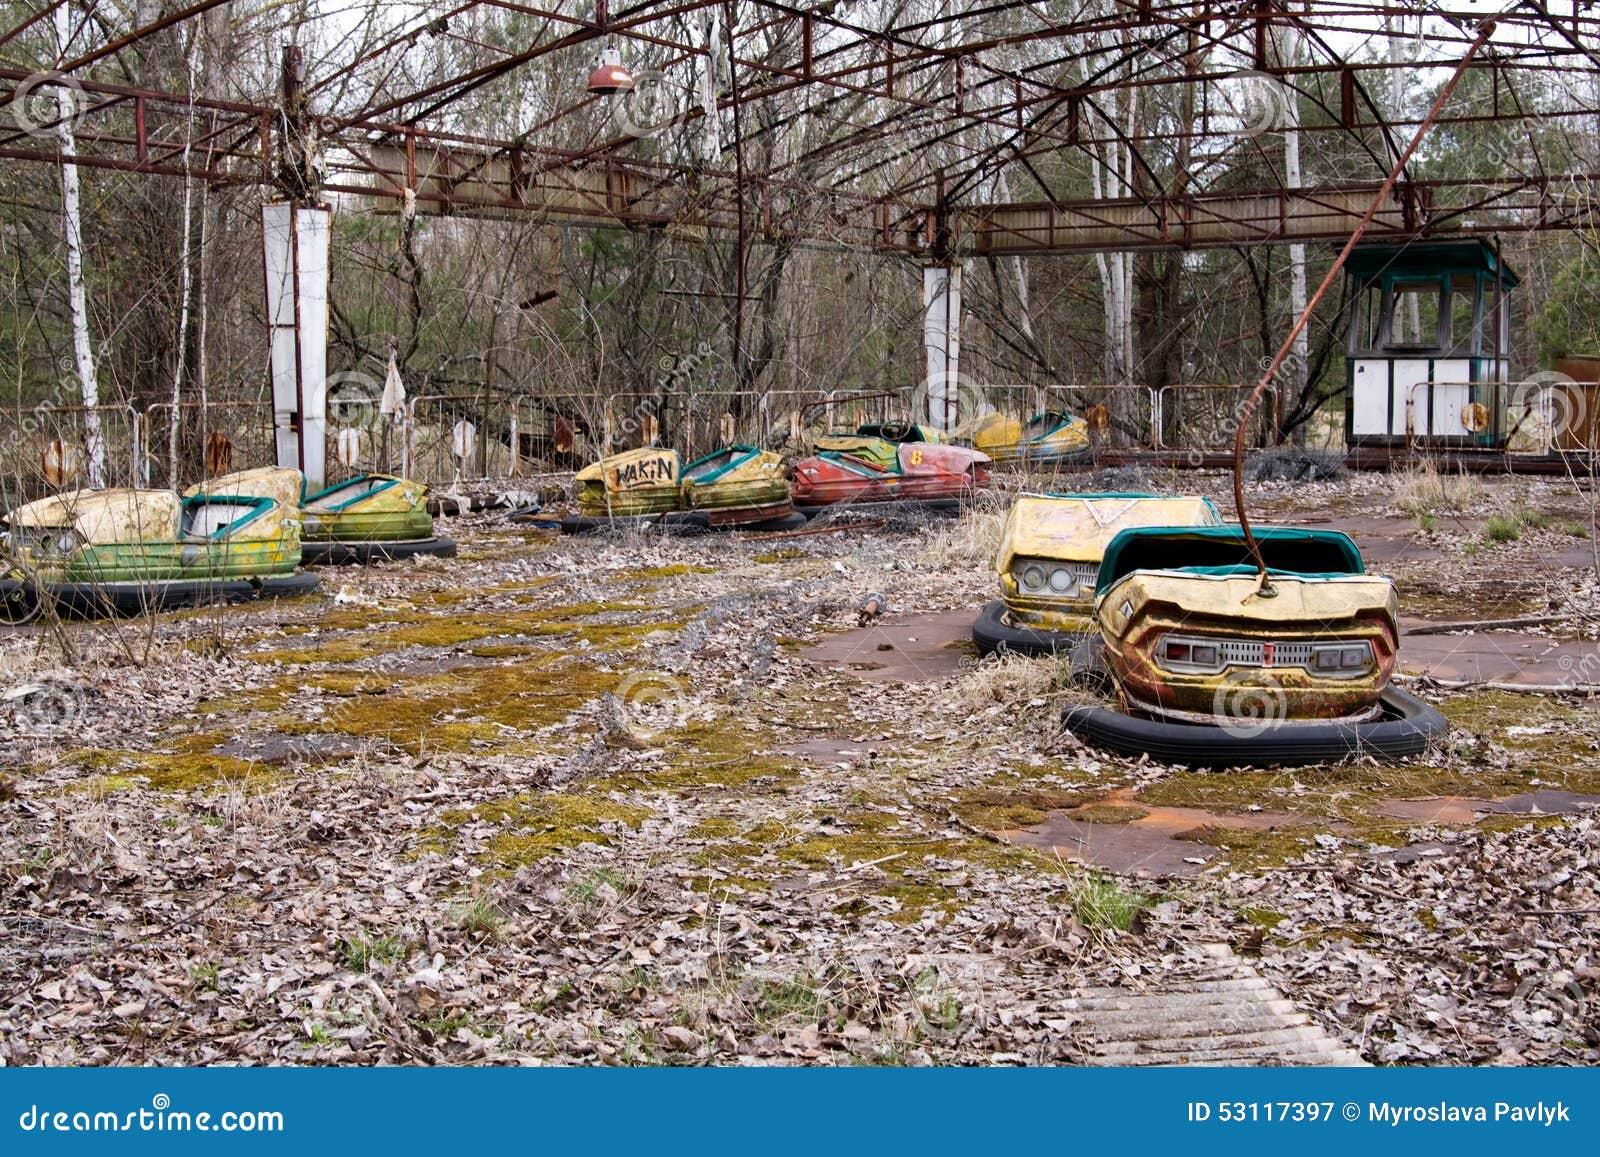 Donna laureata? Niente figli Parco-di-divertimenti-abbandonato-nella-città-fantasma-di-pripyat-cernobyl-53117397